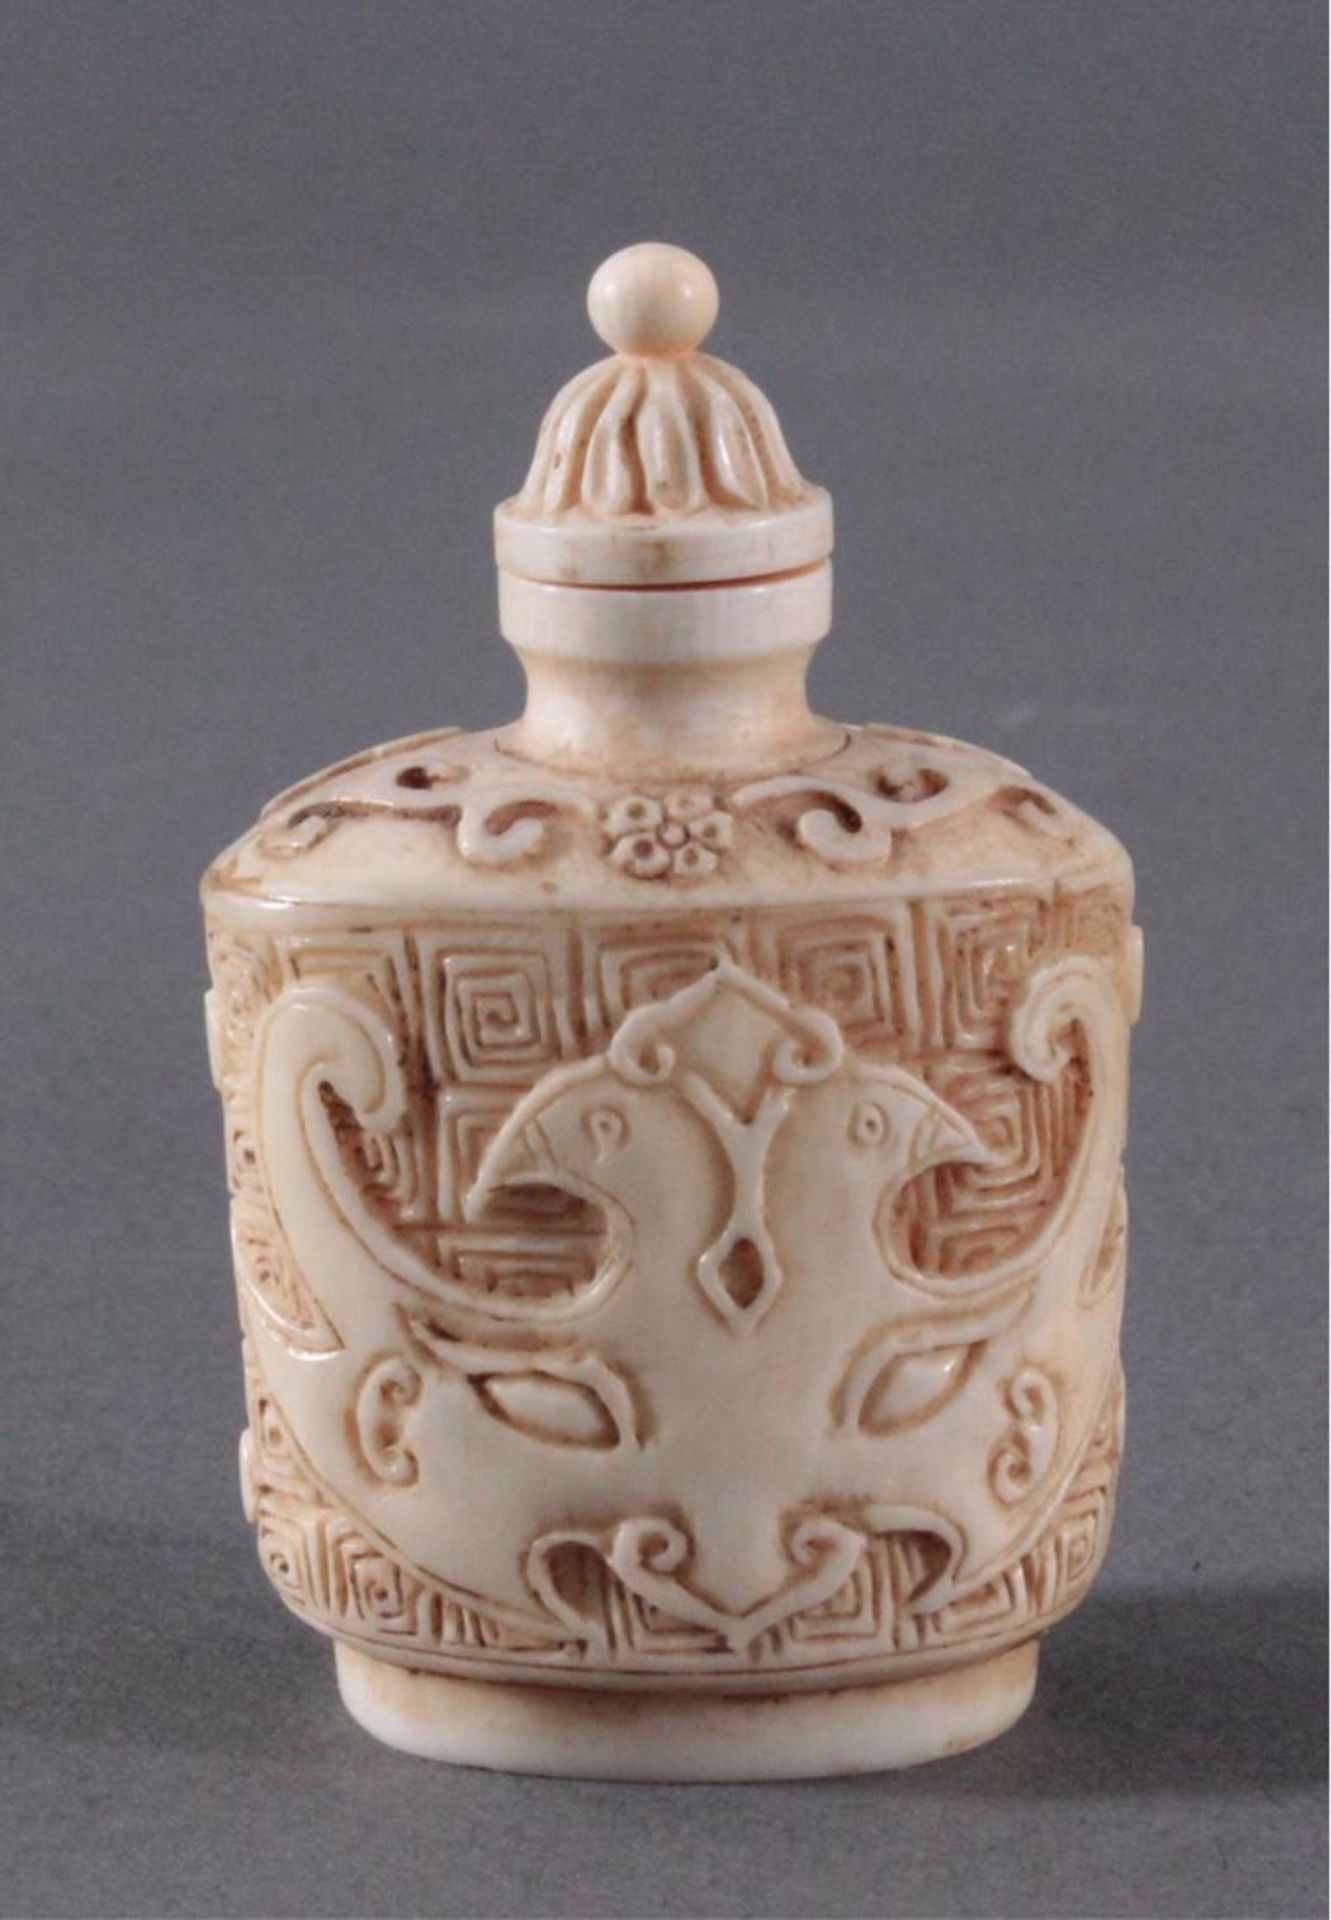 Snuff Bottle aus Elfenbein, China um 1900Umlaufend feine Schnitzarbeit von Ornamenten, ca. Höhe 6,